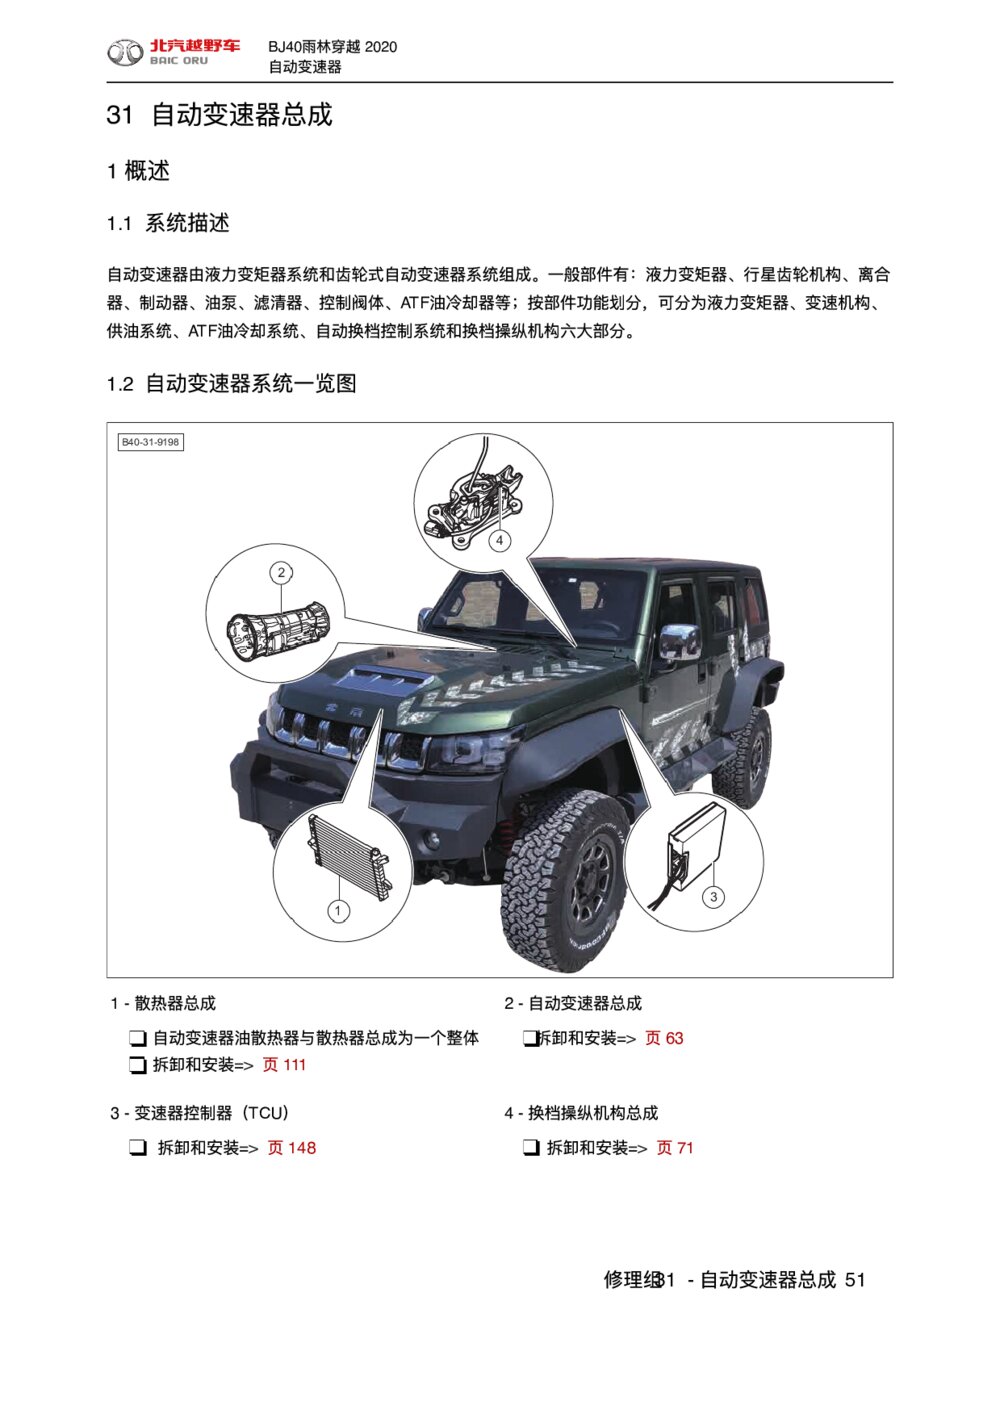 2020款北京BJ40雨林穿越版自动变速器概述